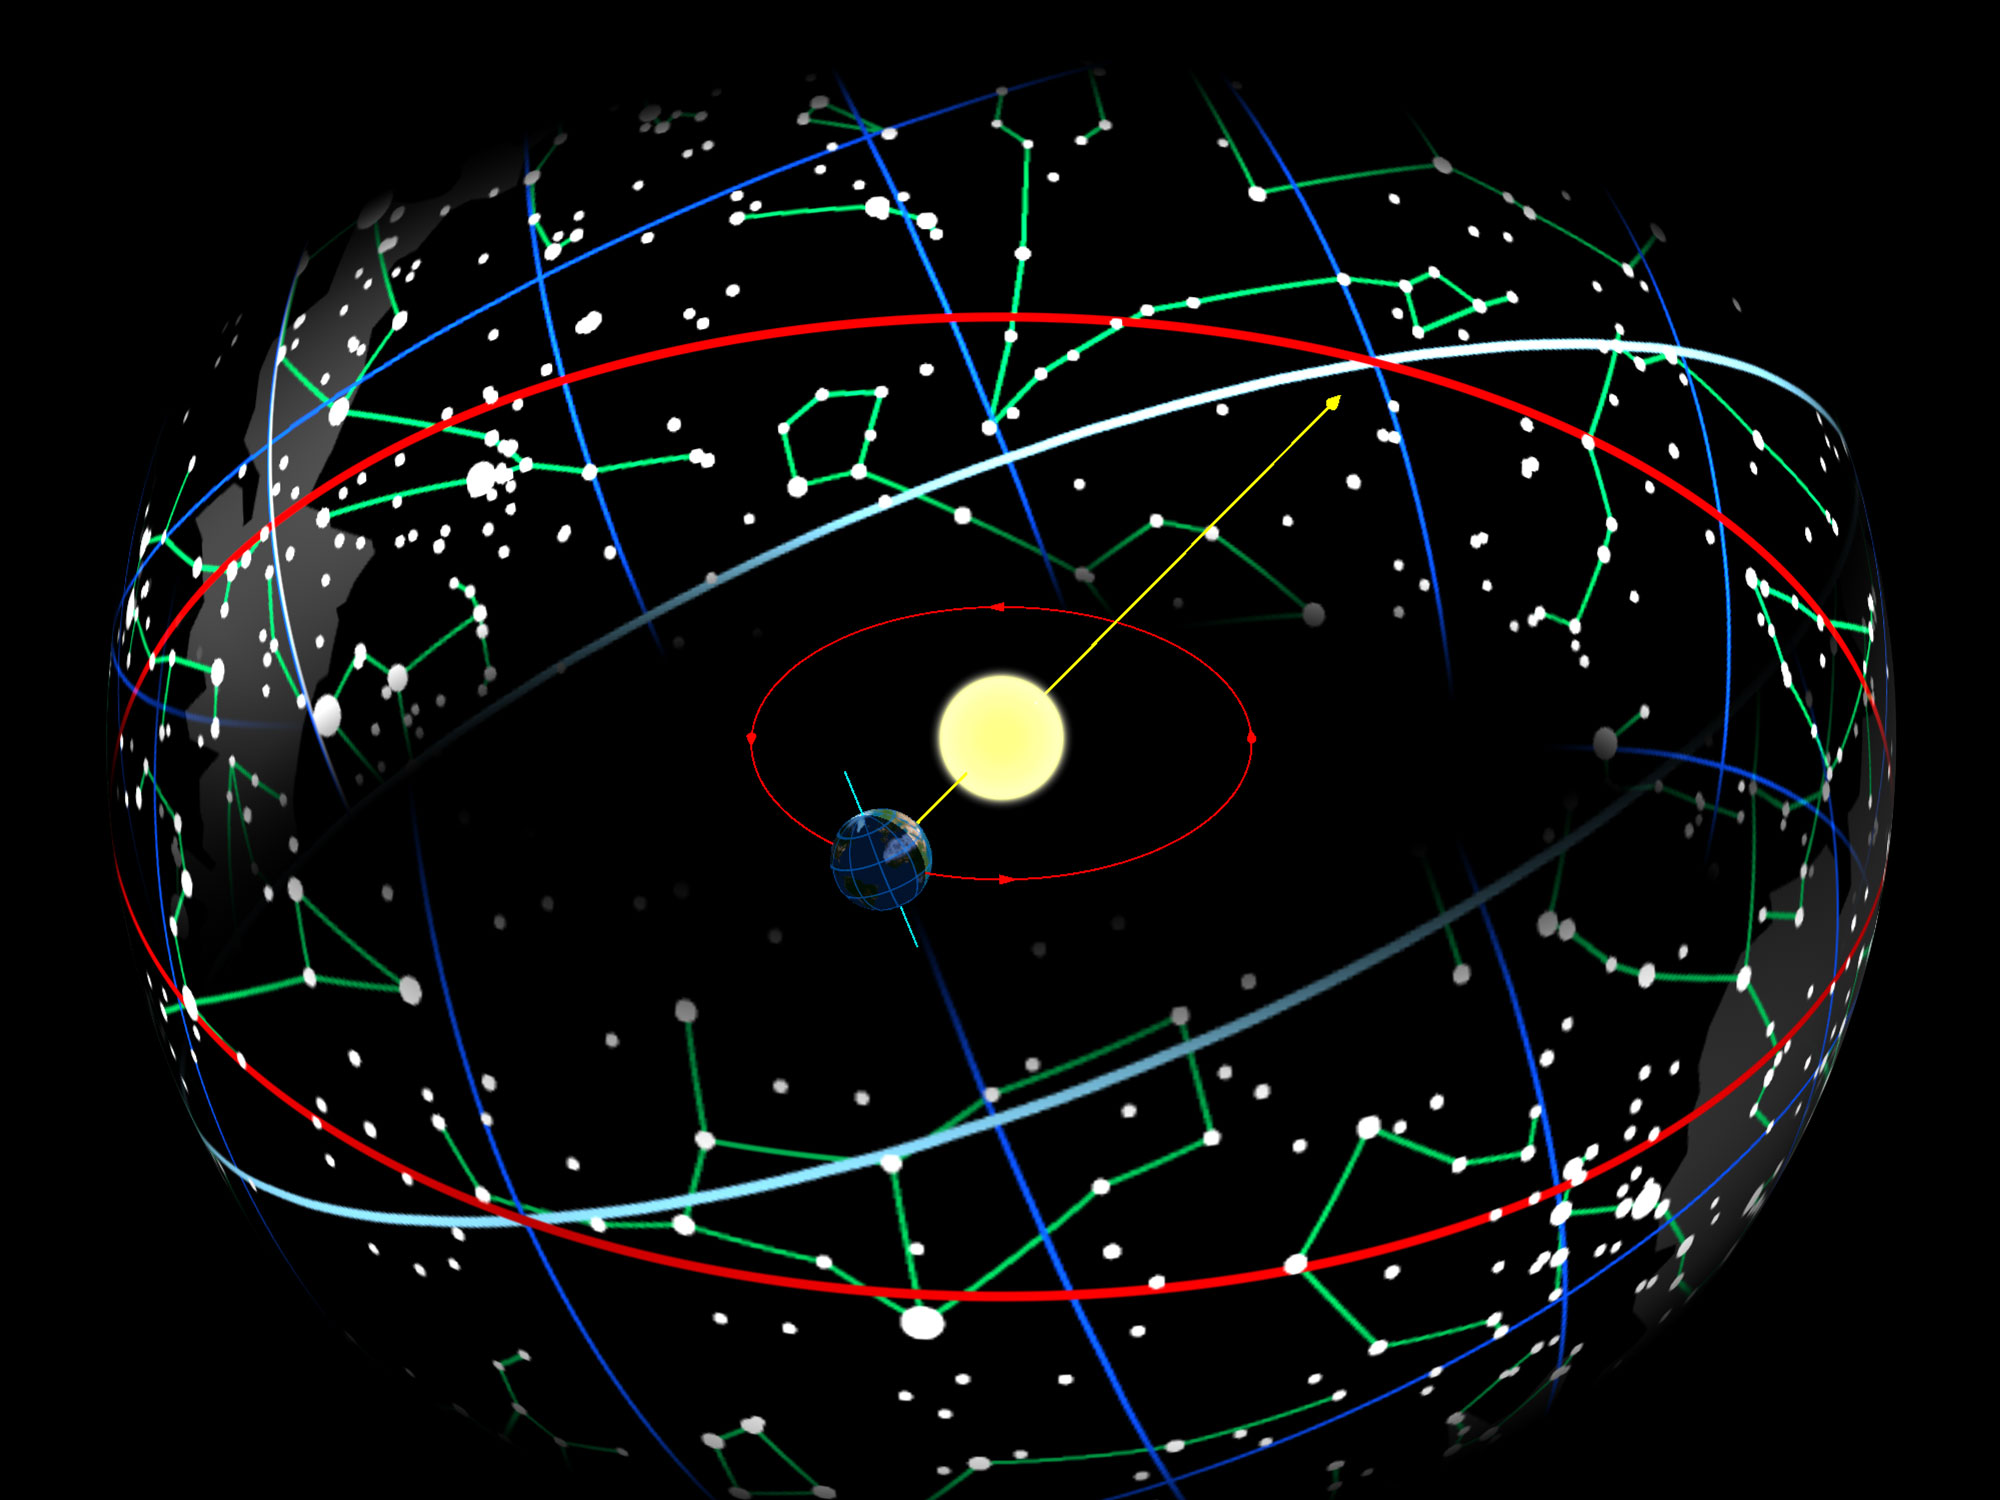 Earth di çarçoveya rojan de li derdora rojê di çarçoveya Sunê de, ku di çarçoveya celestial de bi rêkûpêk (mîkroka sor) ye, ku 23.44 ê bi rêzgirtina celestial (nerm-spî) ve girêdayî ye.